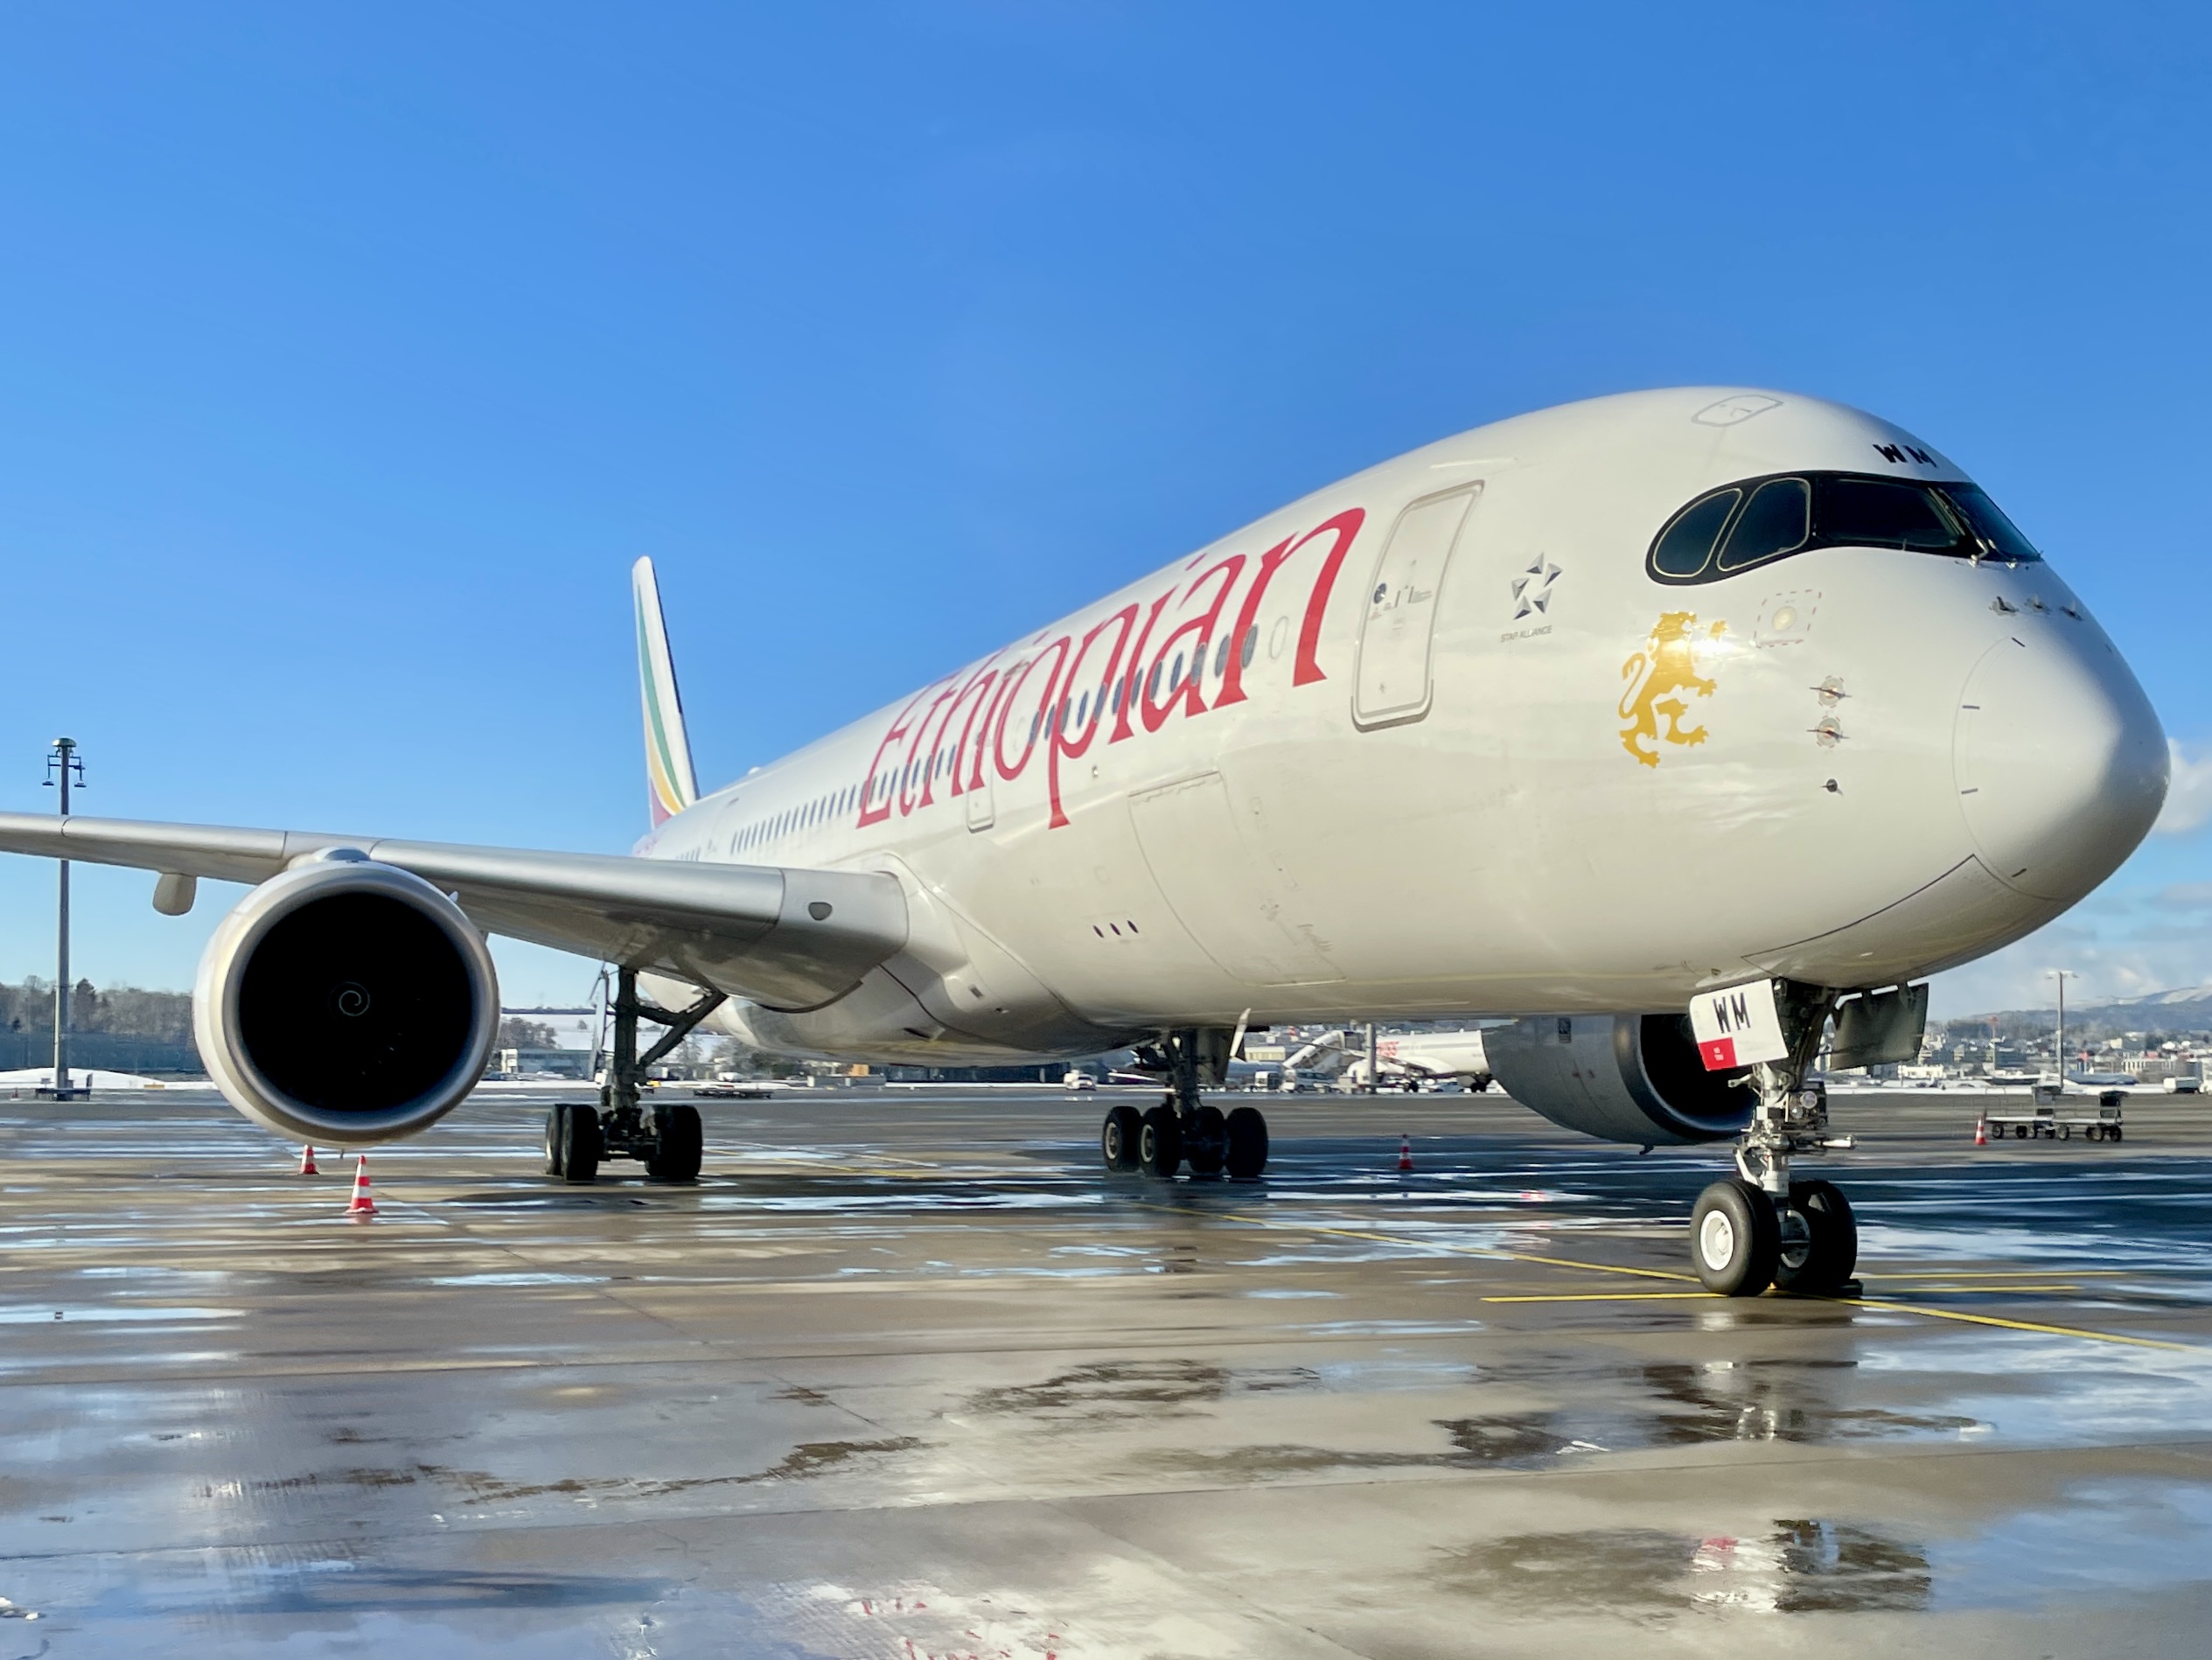 Airbus A350 letecké společnosti Ethiopian Airlines. Foto: Zdopravy.cz / Vojtěch Očadlý